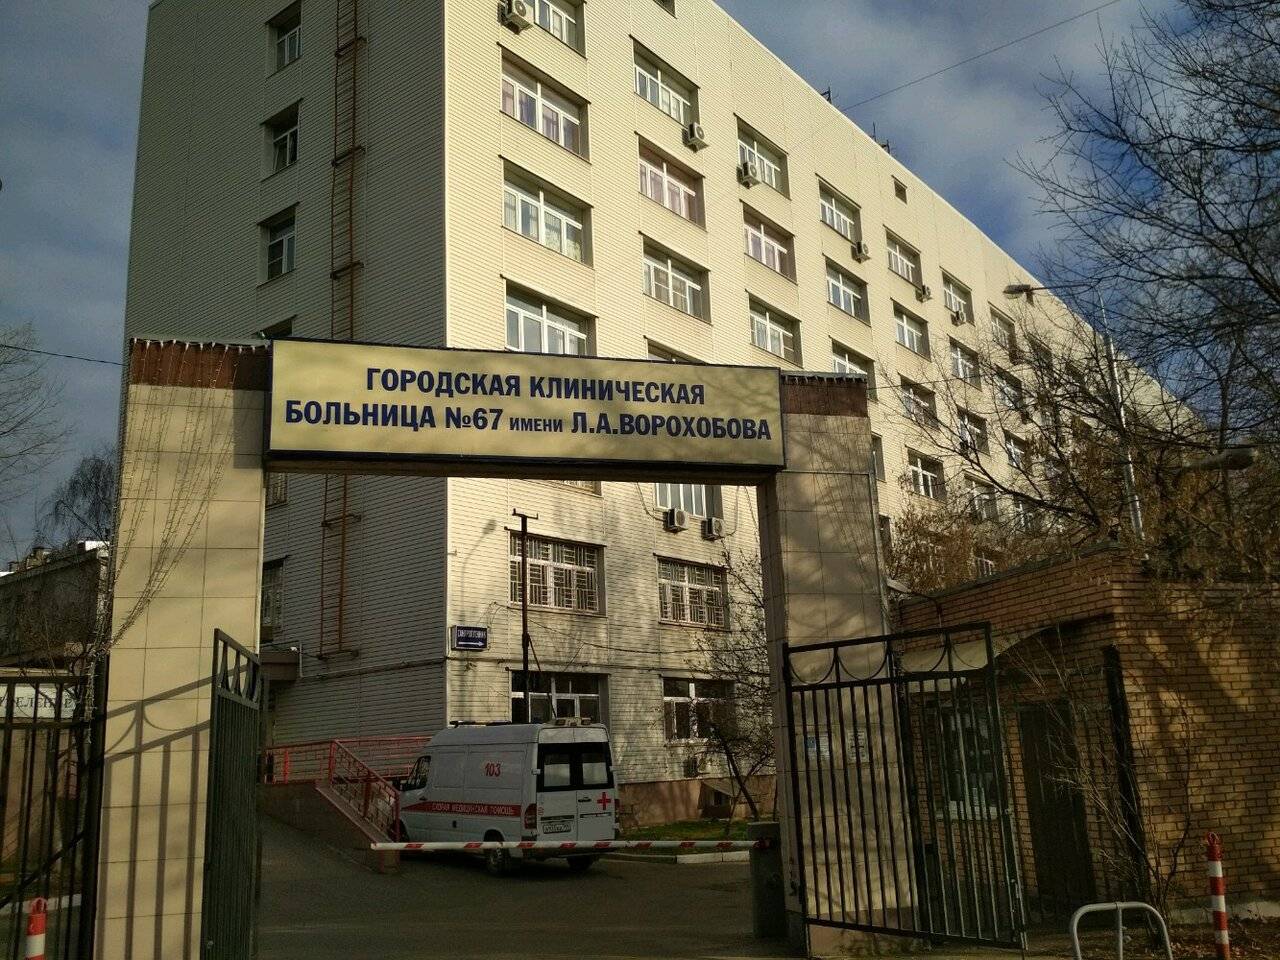 Городская клиническая больница № 67 имени Л.А.Ворохобова фото №1